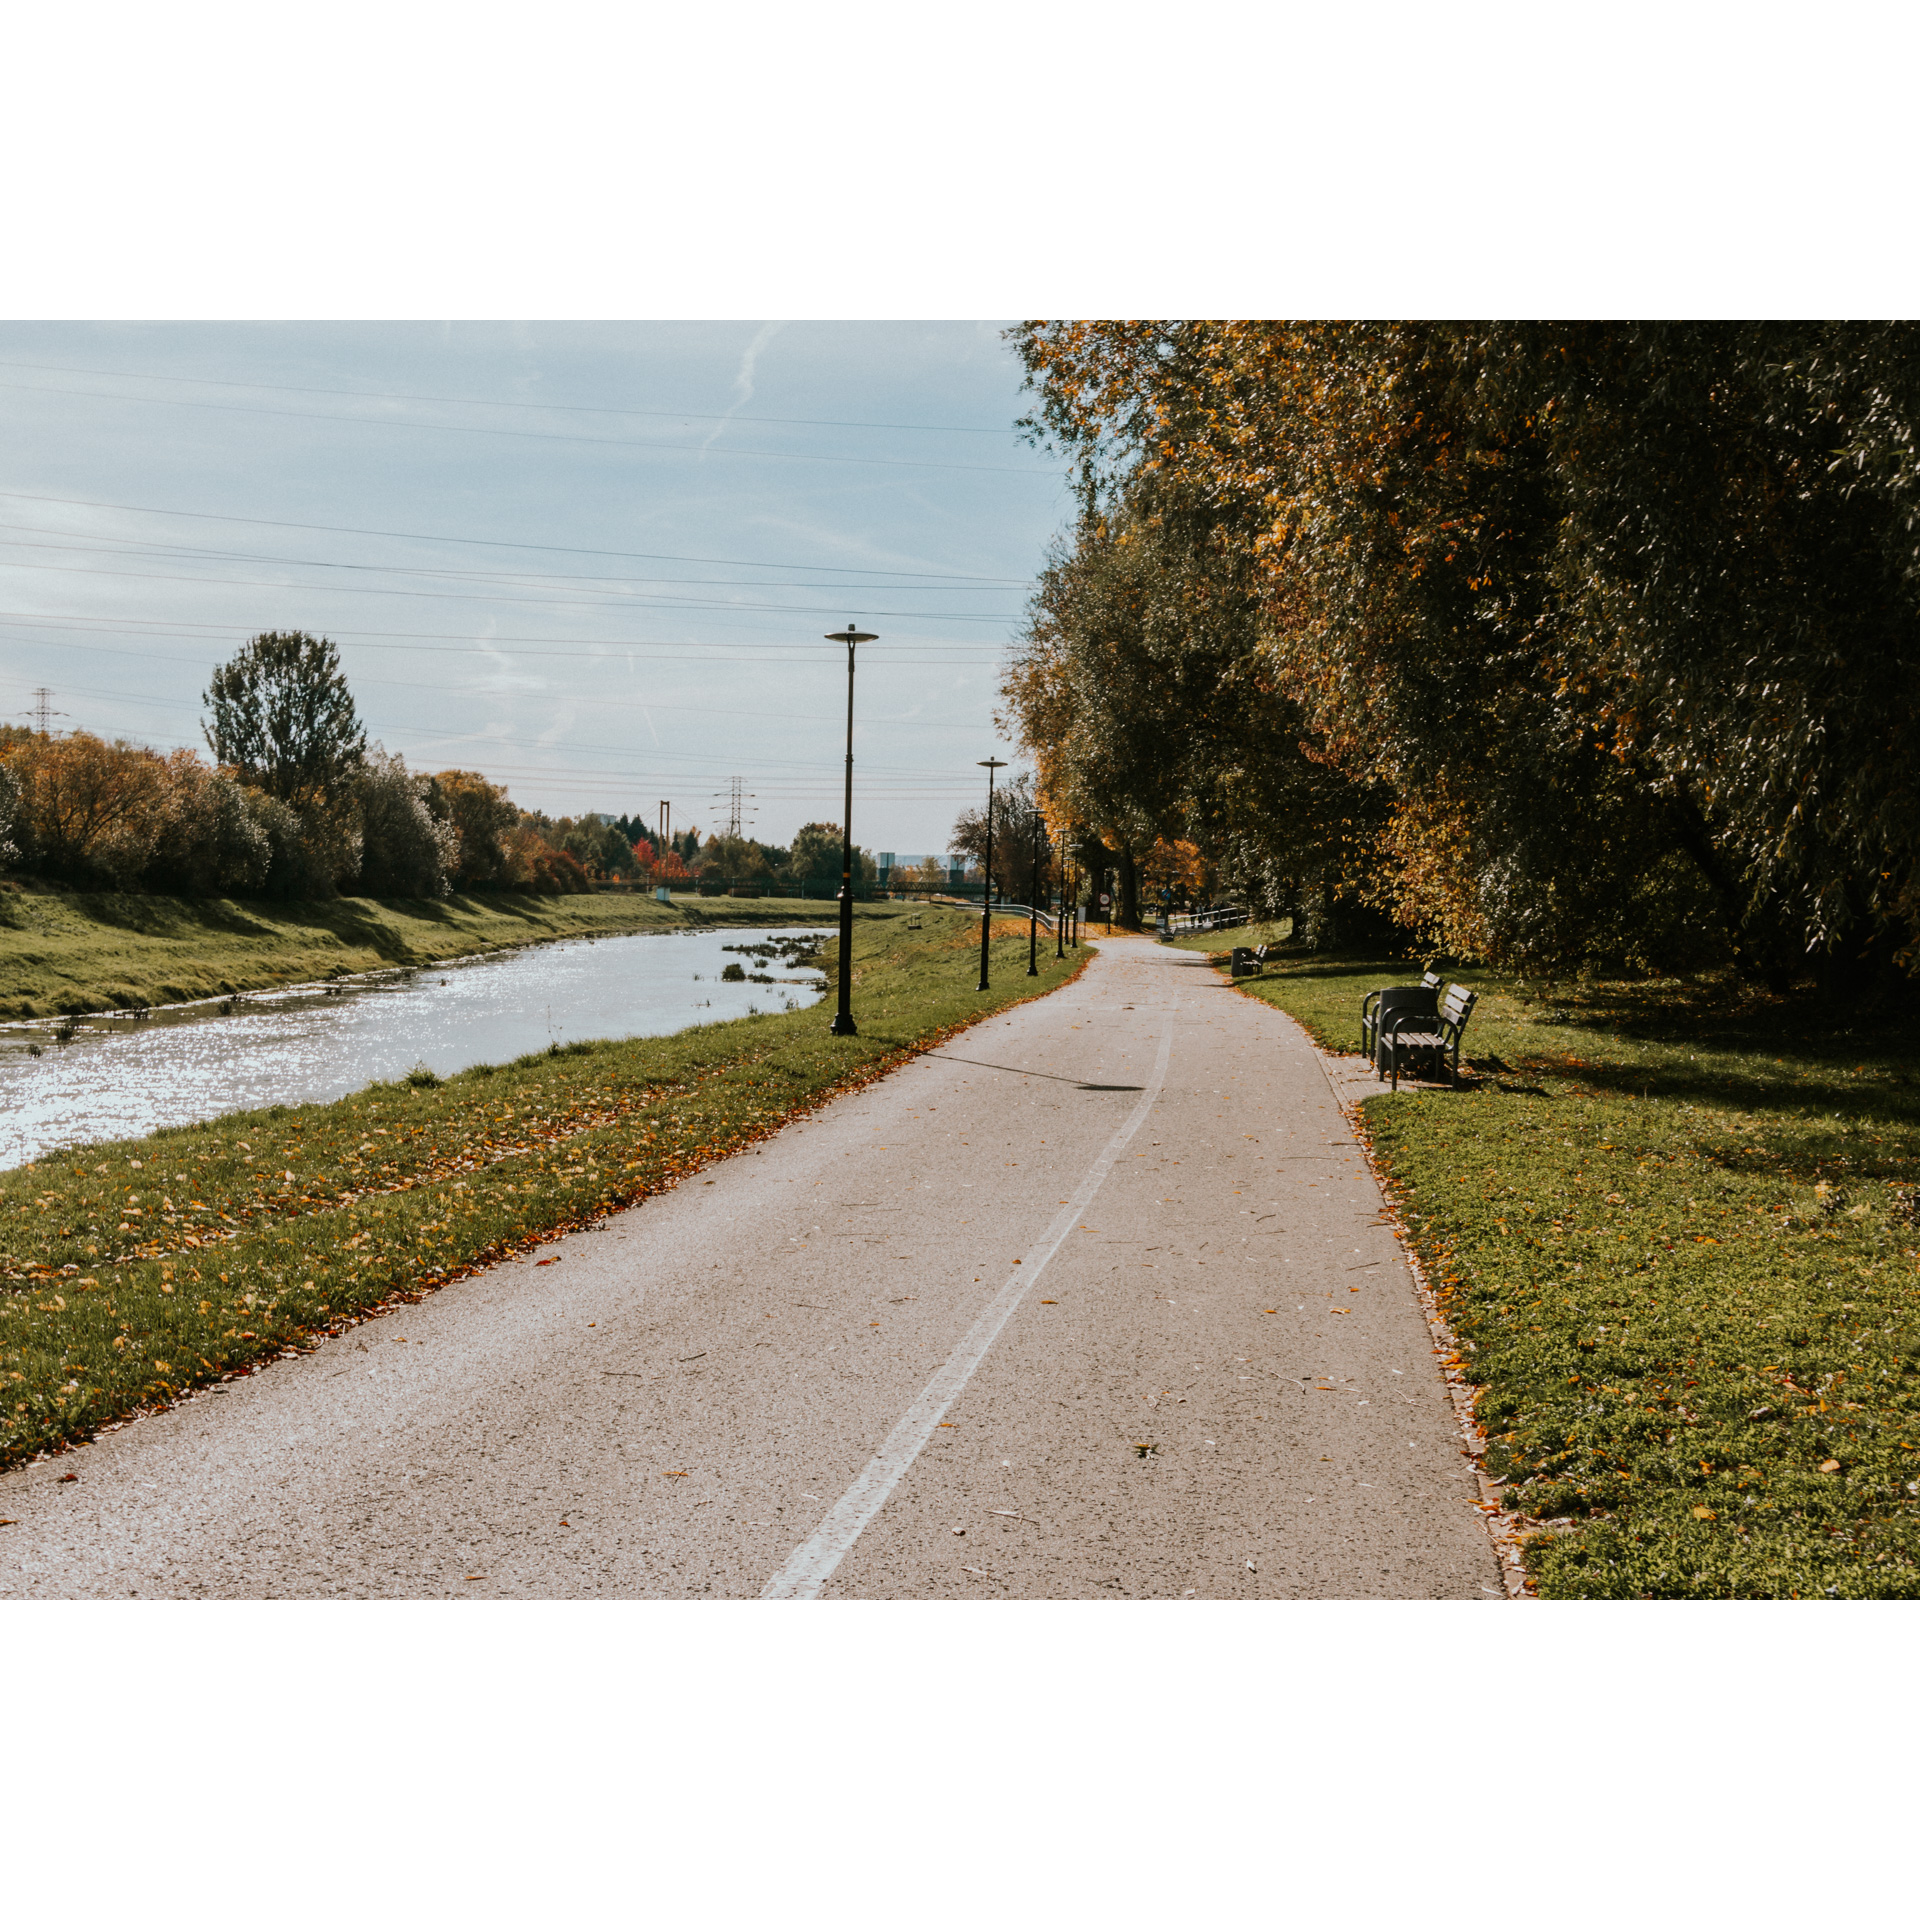 Asfaltowa ścieżka dla pieszych i rowerzystów, po lewej stronie rzeka i krzewy, po prawej stronie drewniane ławki i wysokie drzewa z kolorowymi liśćmi